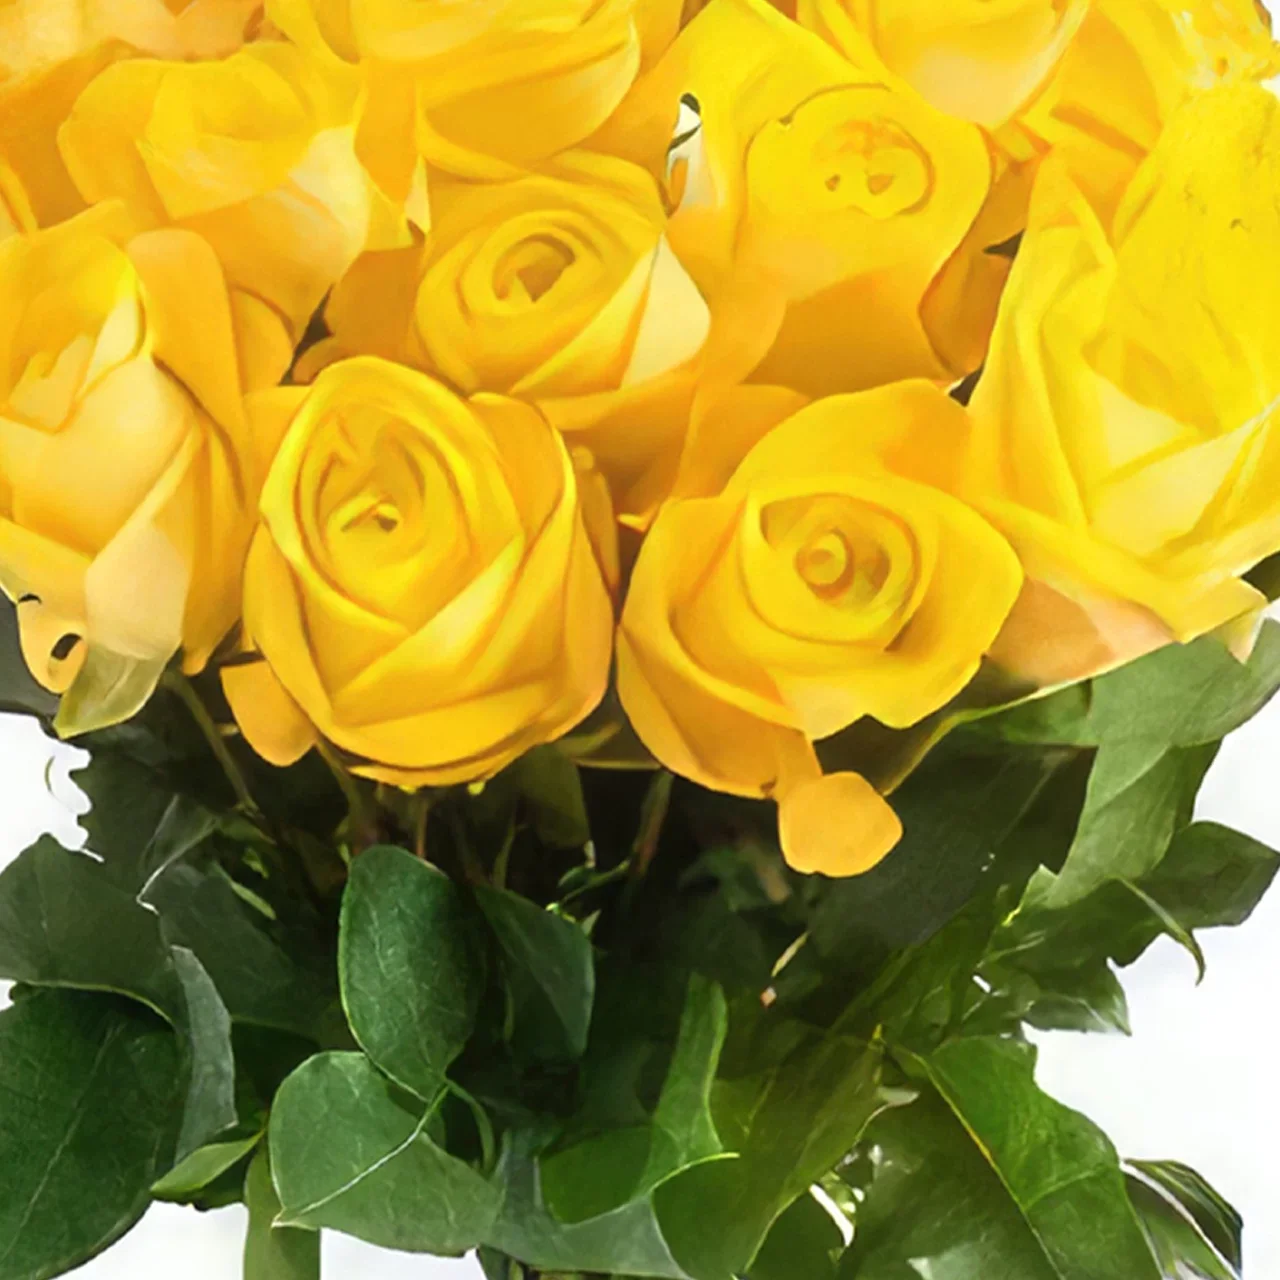 Ουτρέχτη λουλούδια- Μπουκέτο με κίτρινα τριαντάφυλλα Μπουκέτο/ρύθμιση λουλουδιών